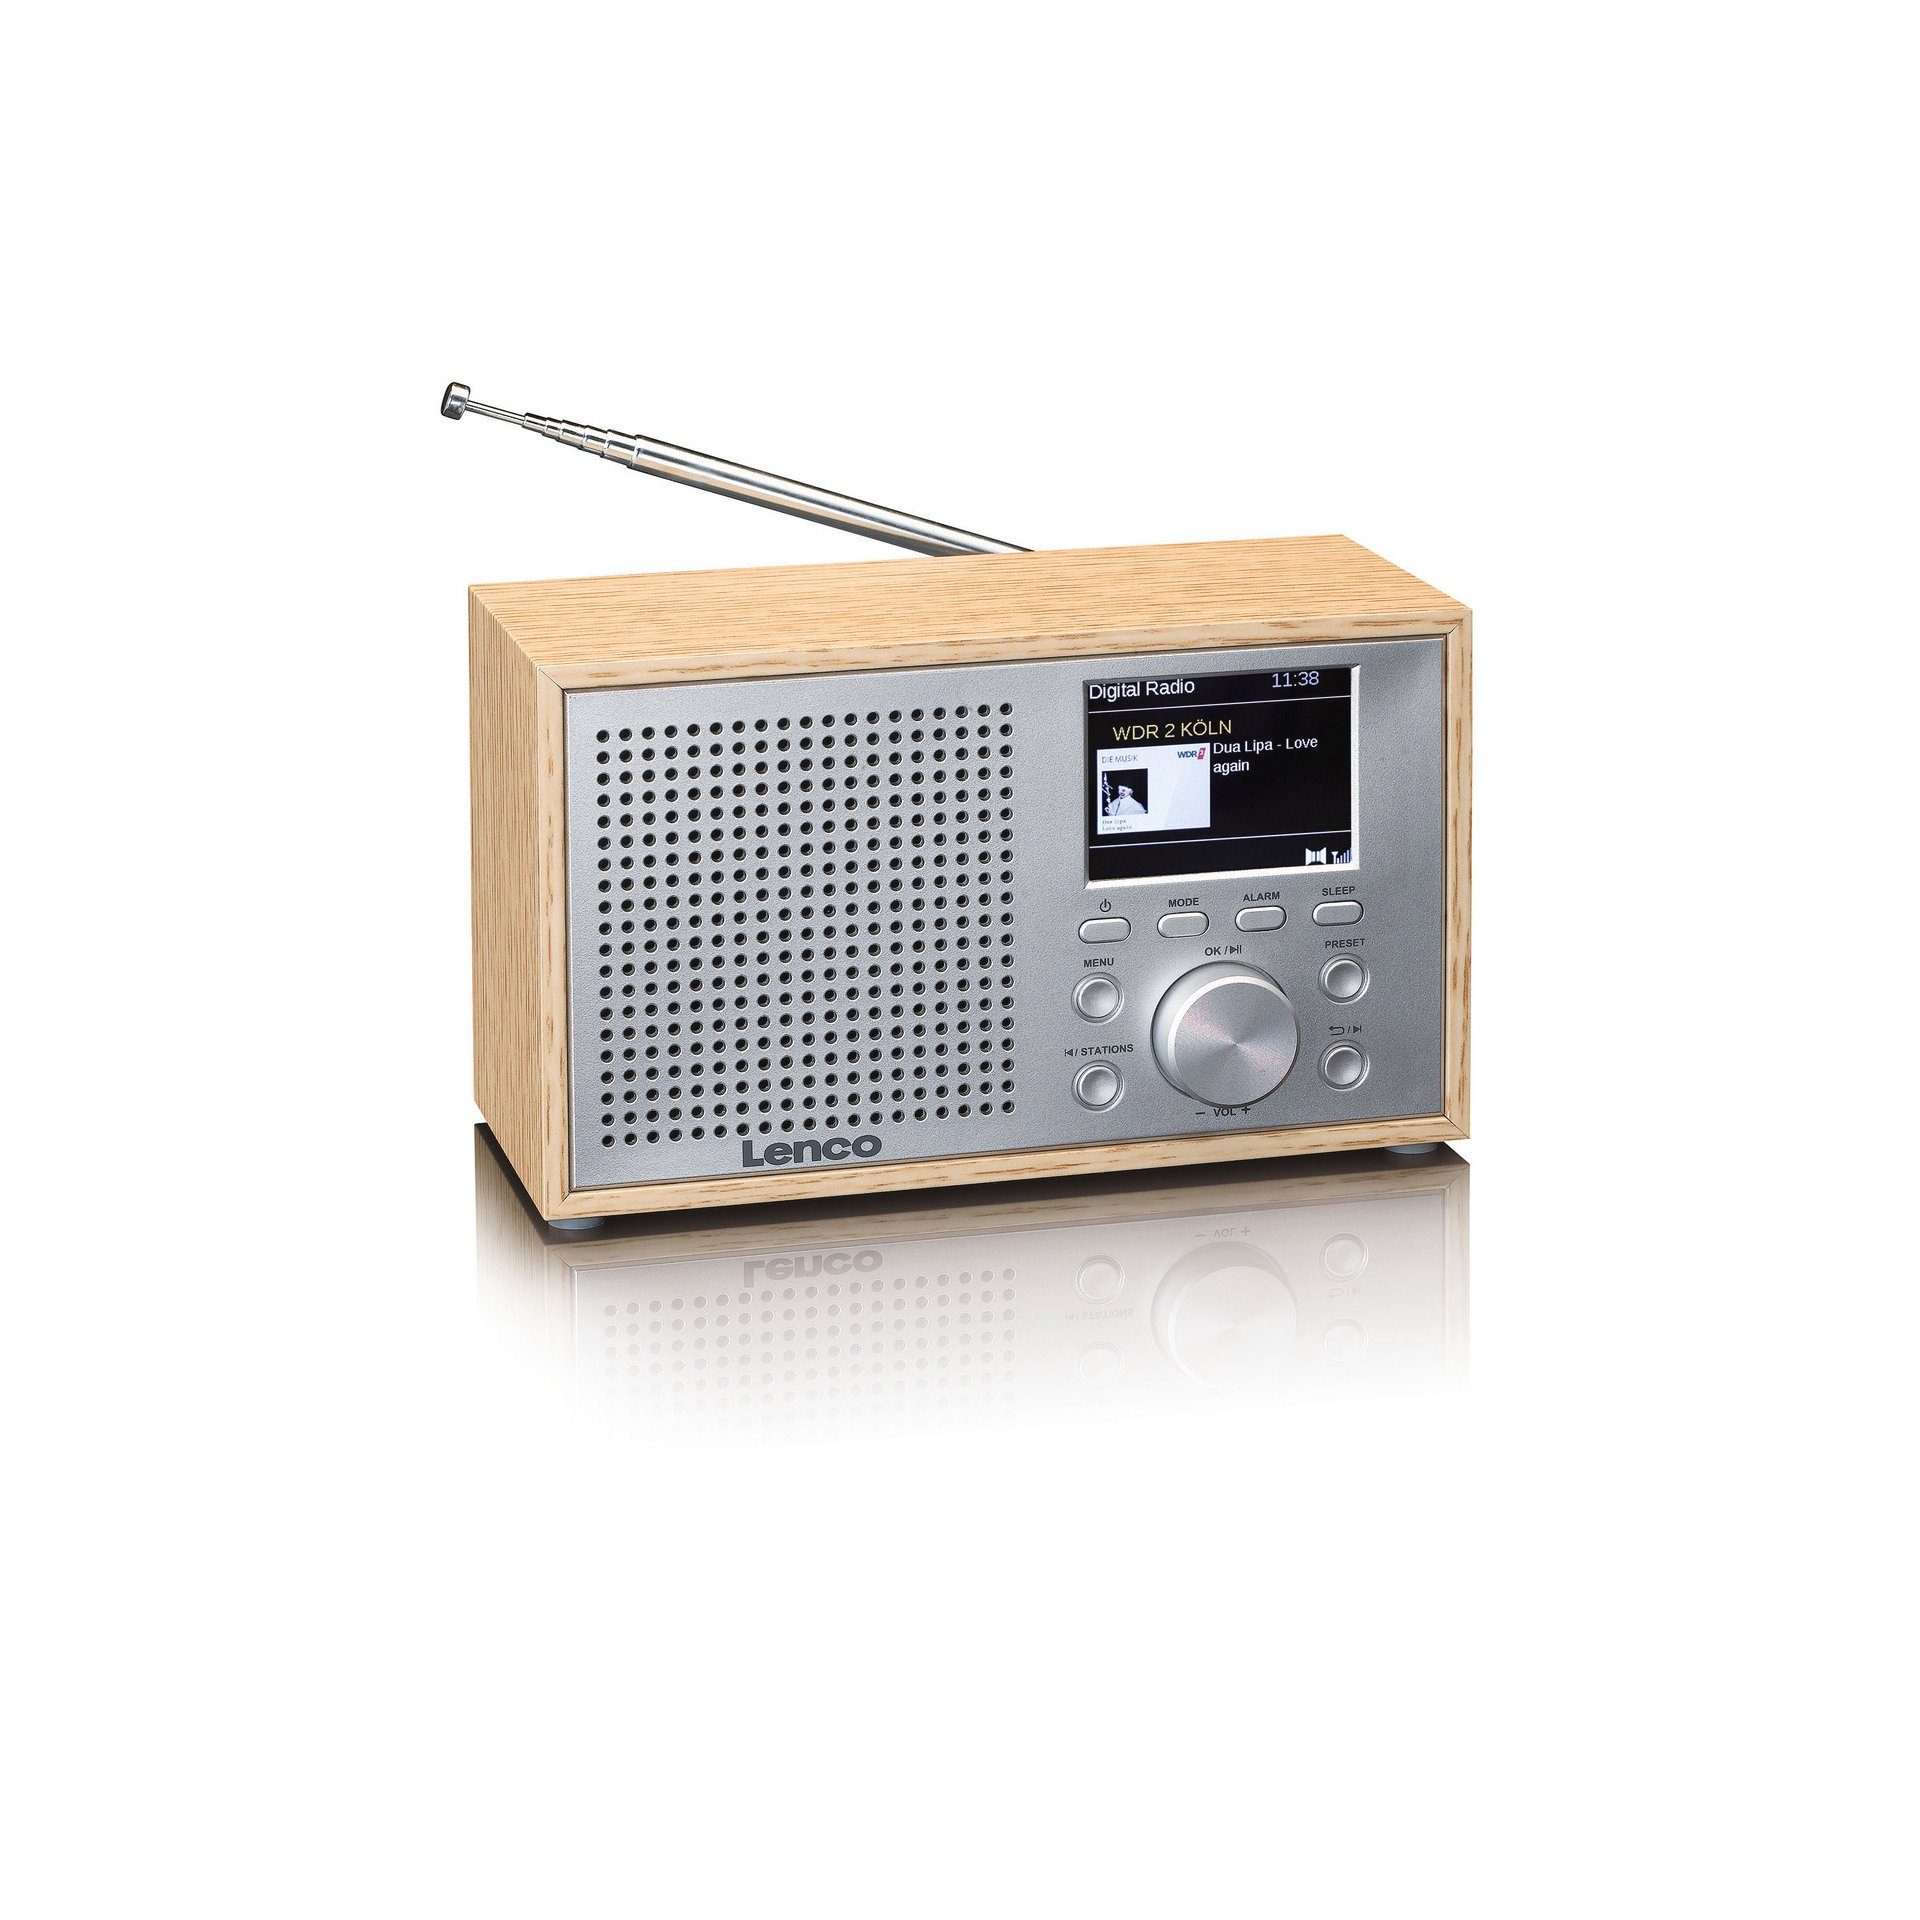 Lenco DAR-017 DAB+/FM Radio mit (DAB), W) Bluetooth Hellbraun;Silber (DAB) Digitalradio (Digitalradio 3